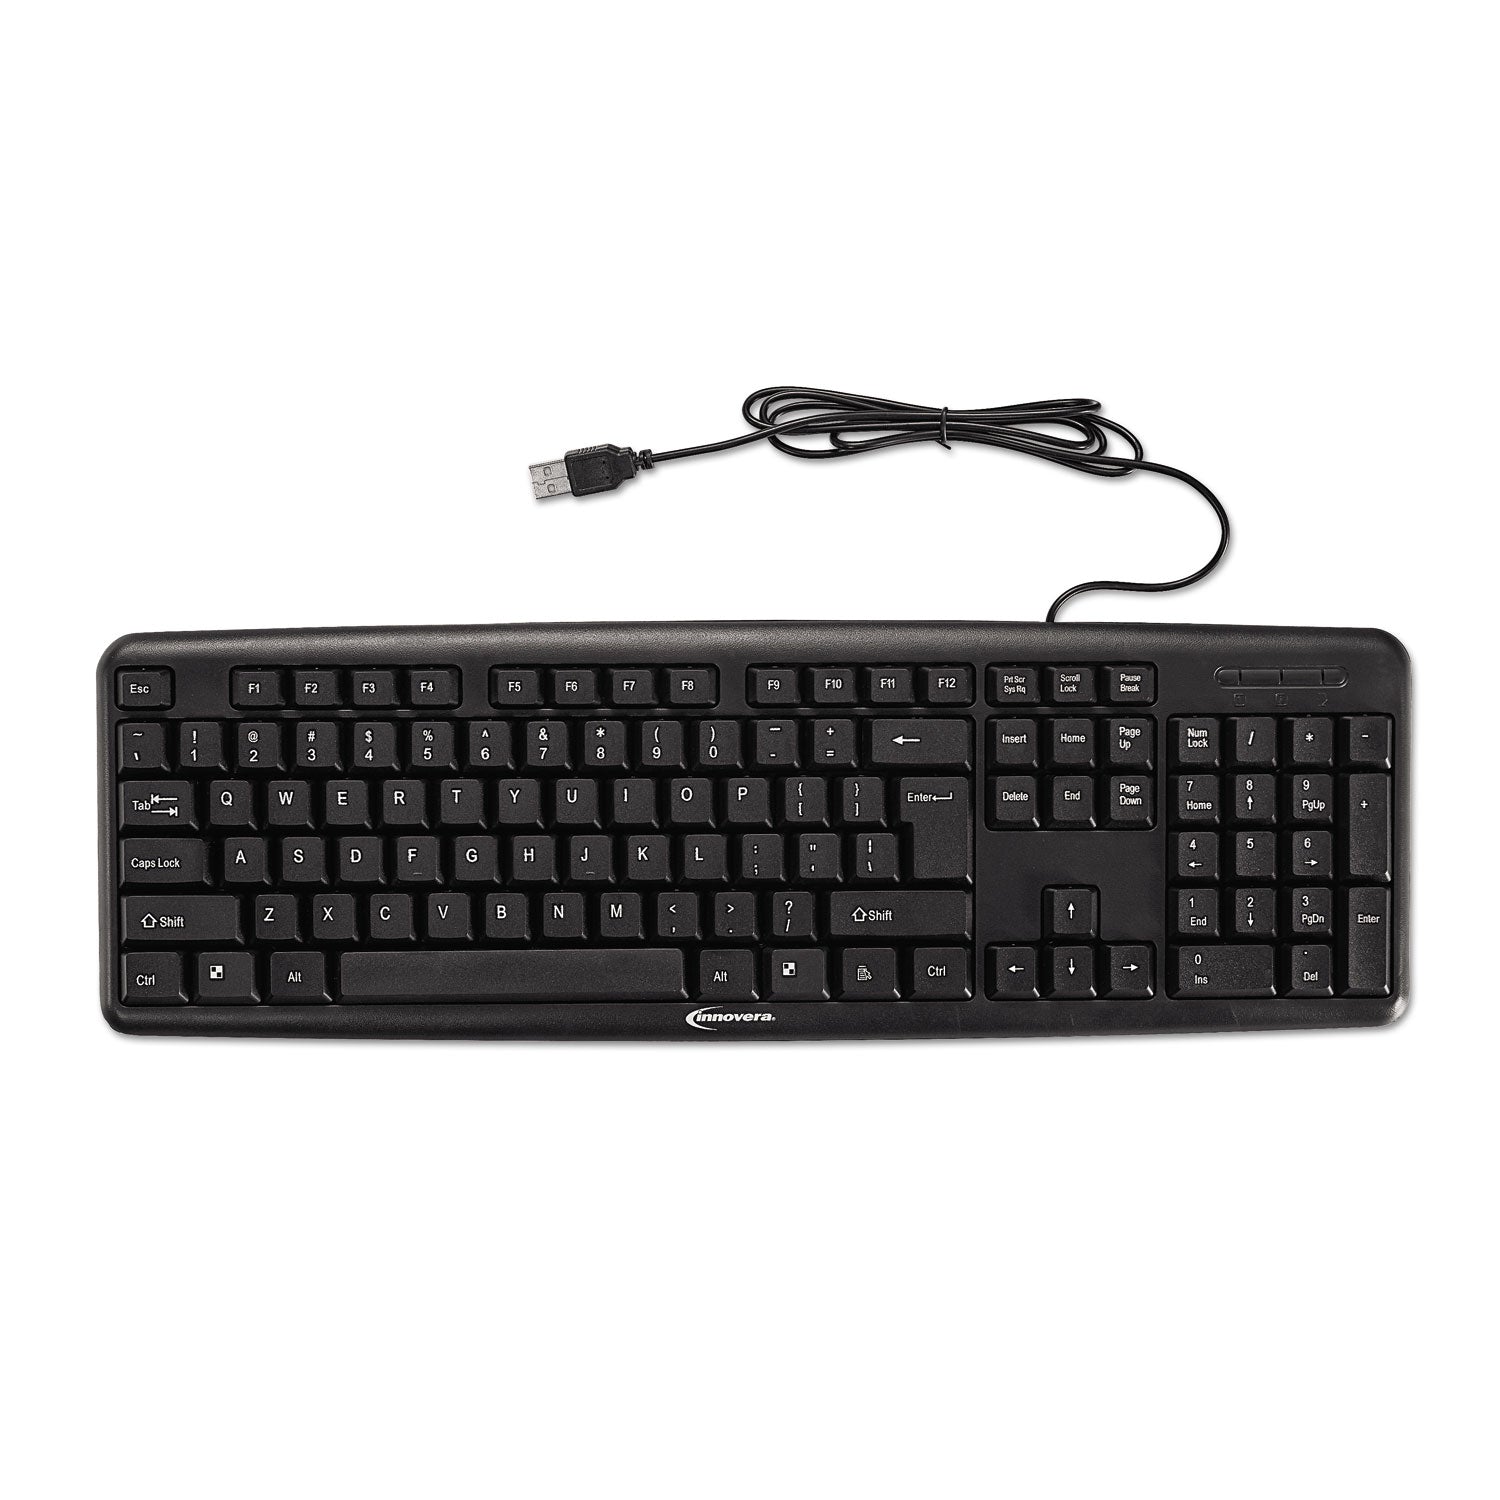 slimline-keyboard-and-mouse-usb-20-black_ivr69202 - 2